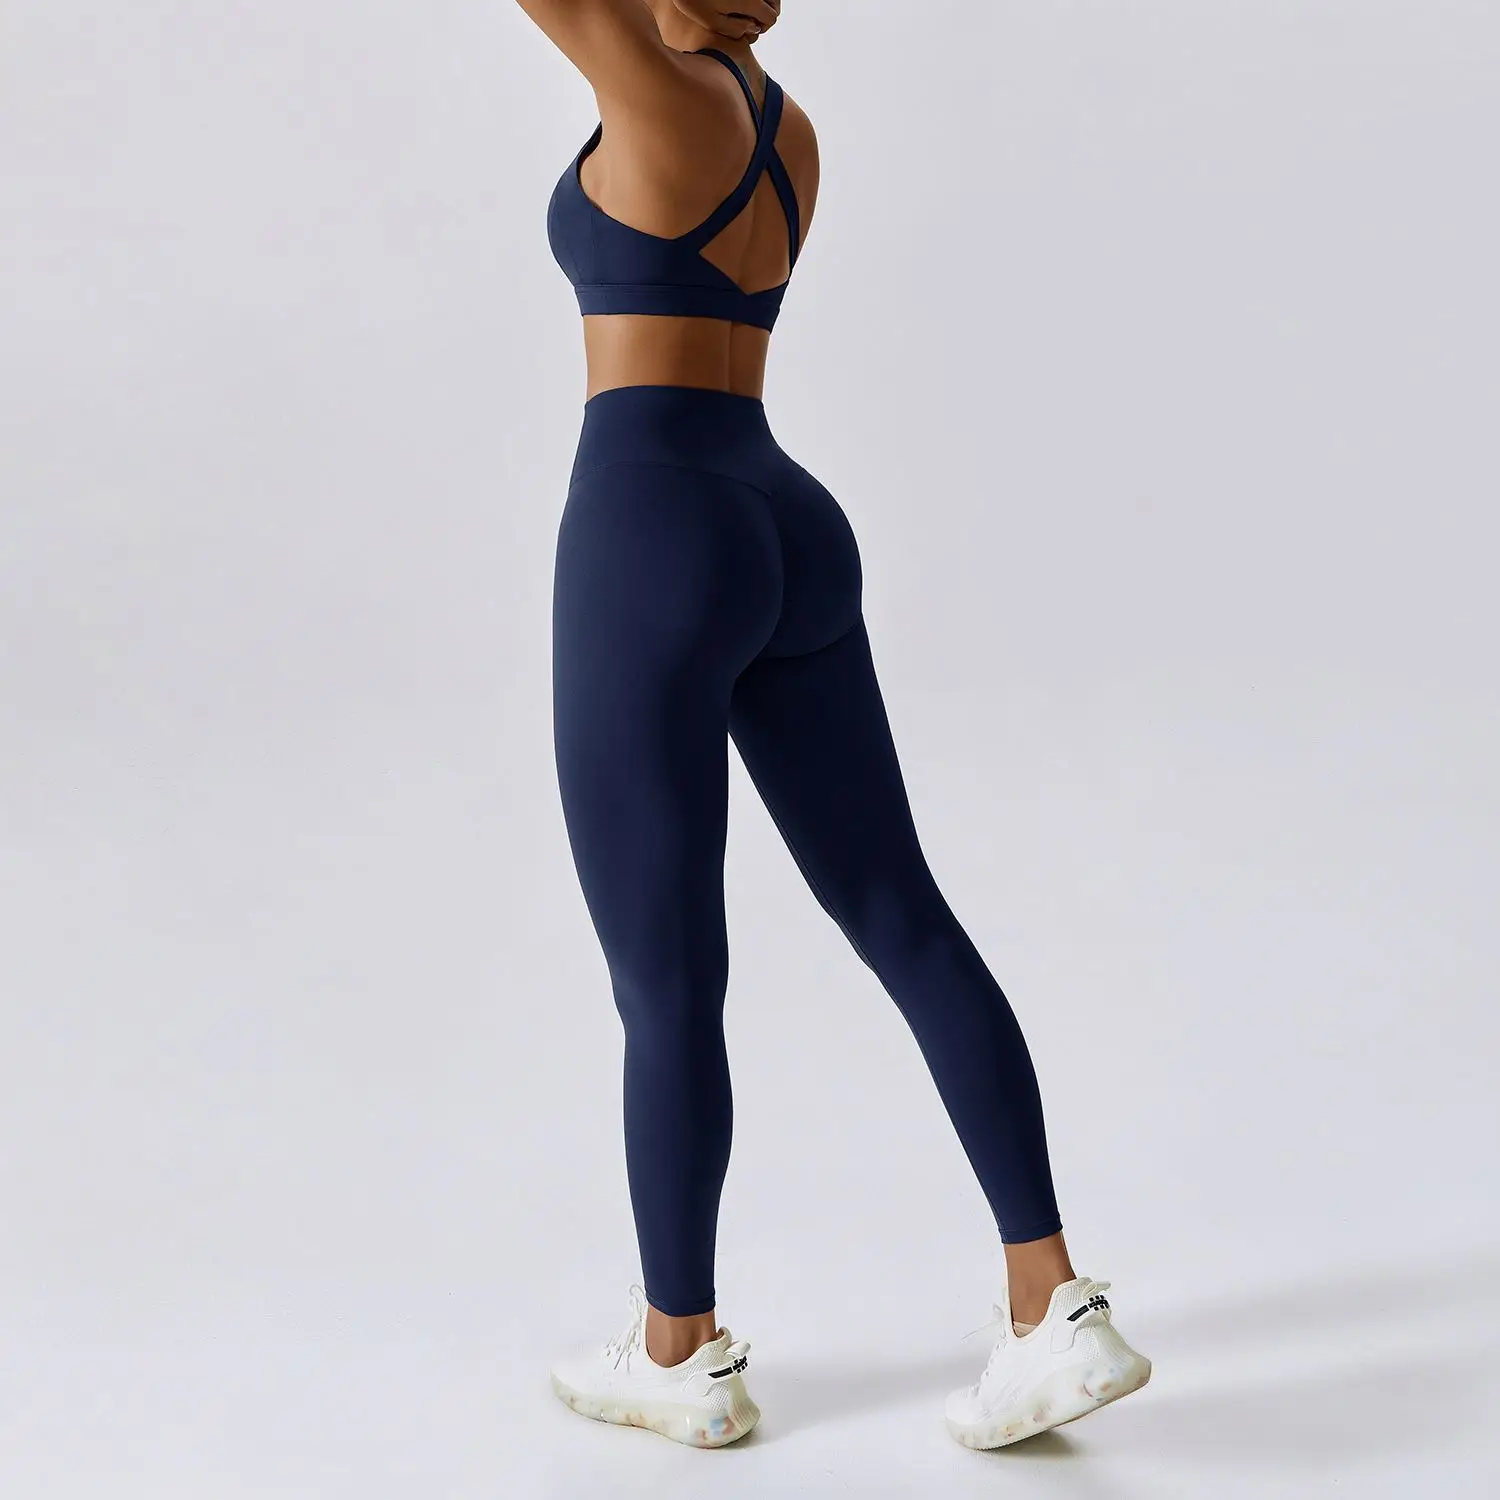 ECBC  New arrival sexy strap back sports bra & workout leggings pants 2-piece women yoga set